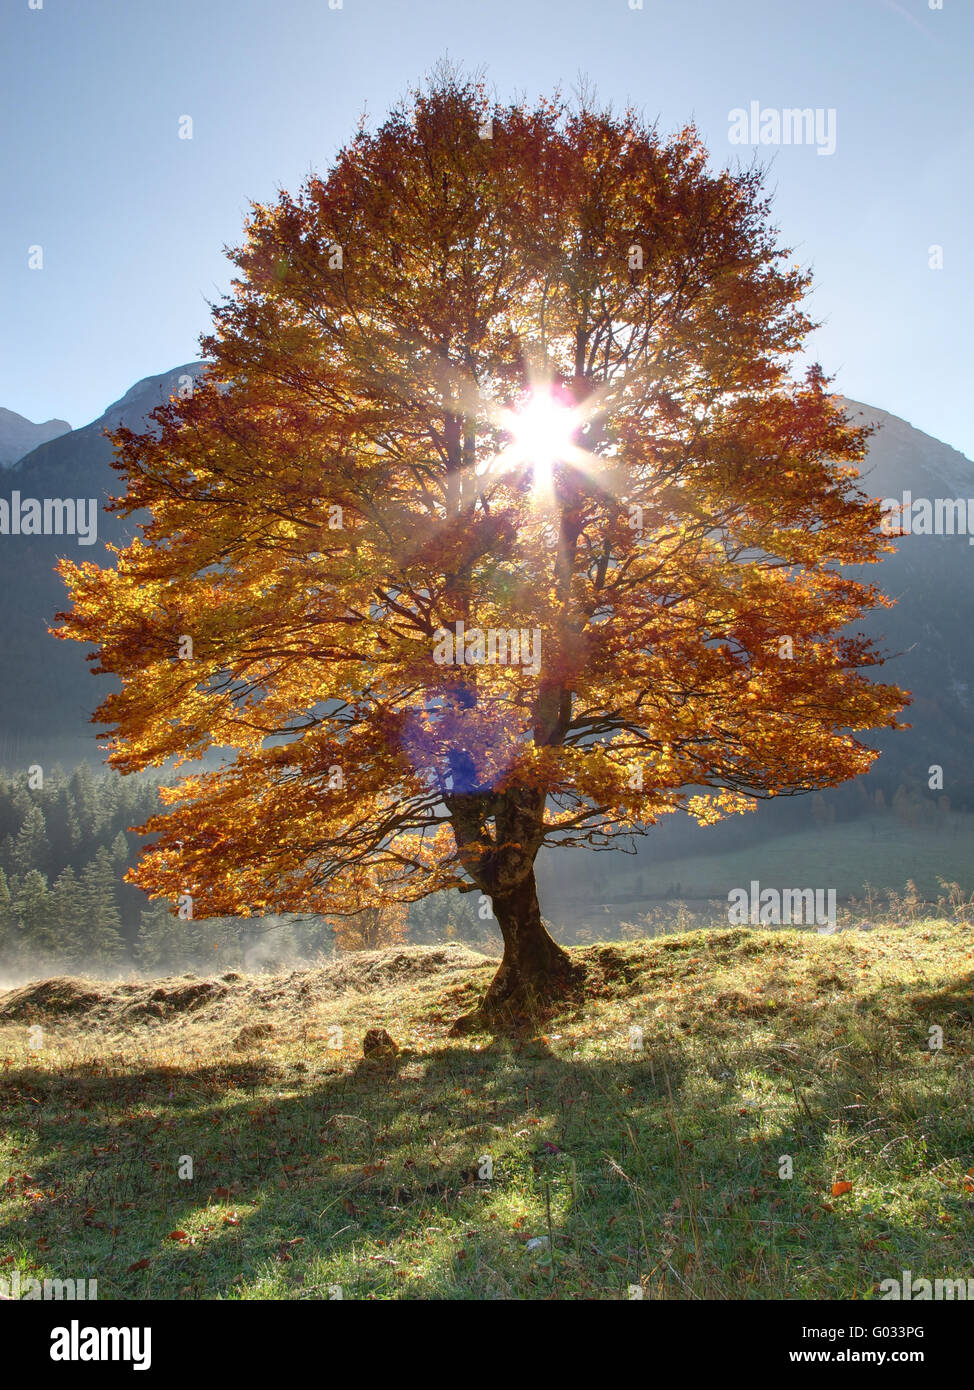 Autumn maple tree in back light Stock Photo